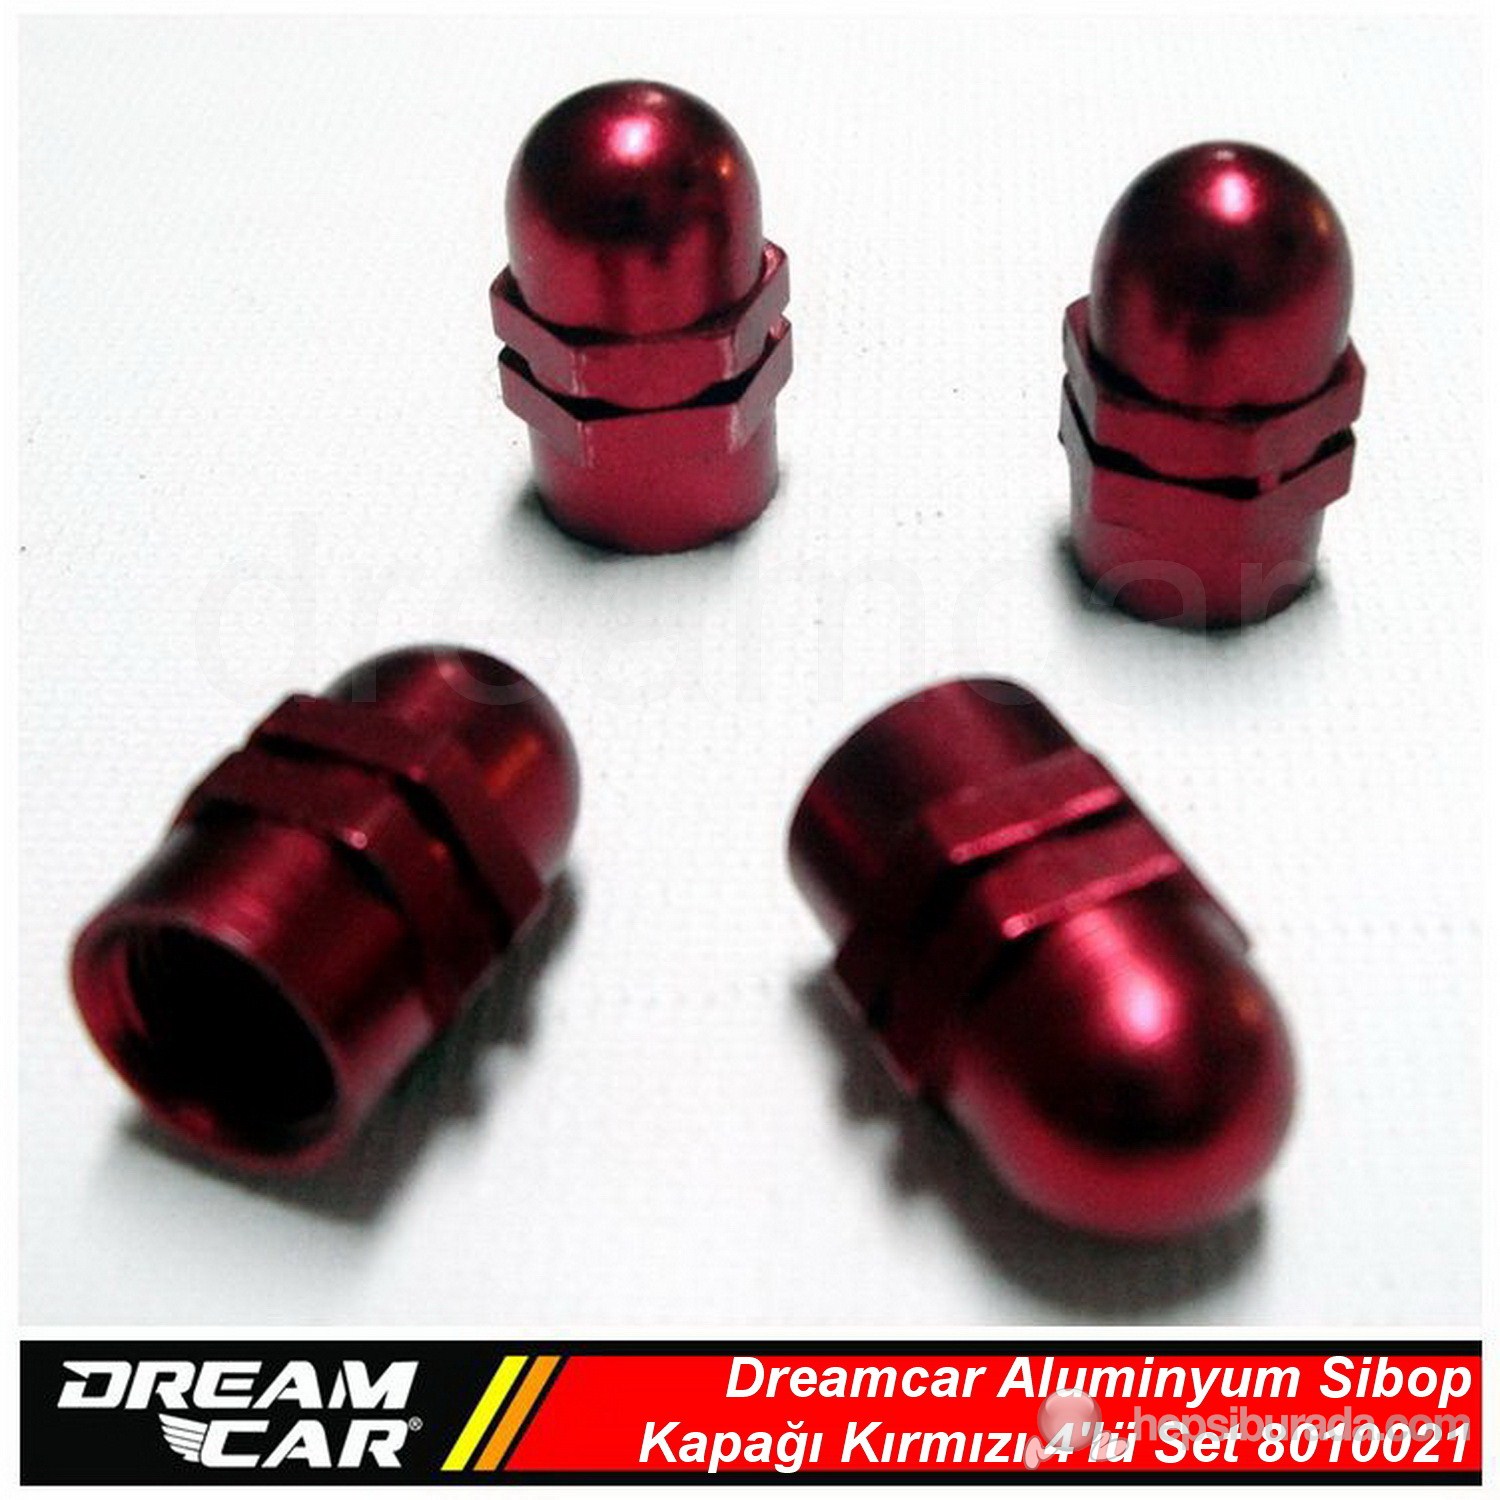 Dreamcar Aluminyum Sibop Kapağı 4'lü Set Kırmızı 8010021